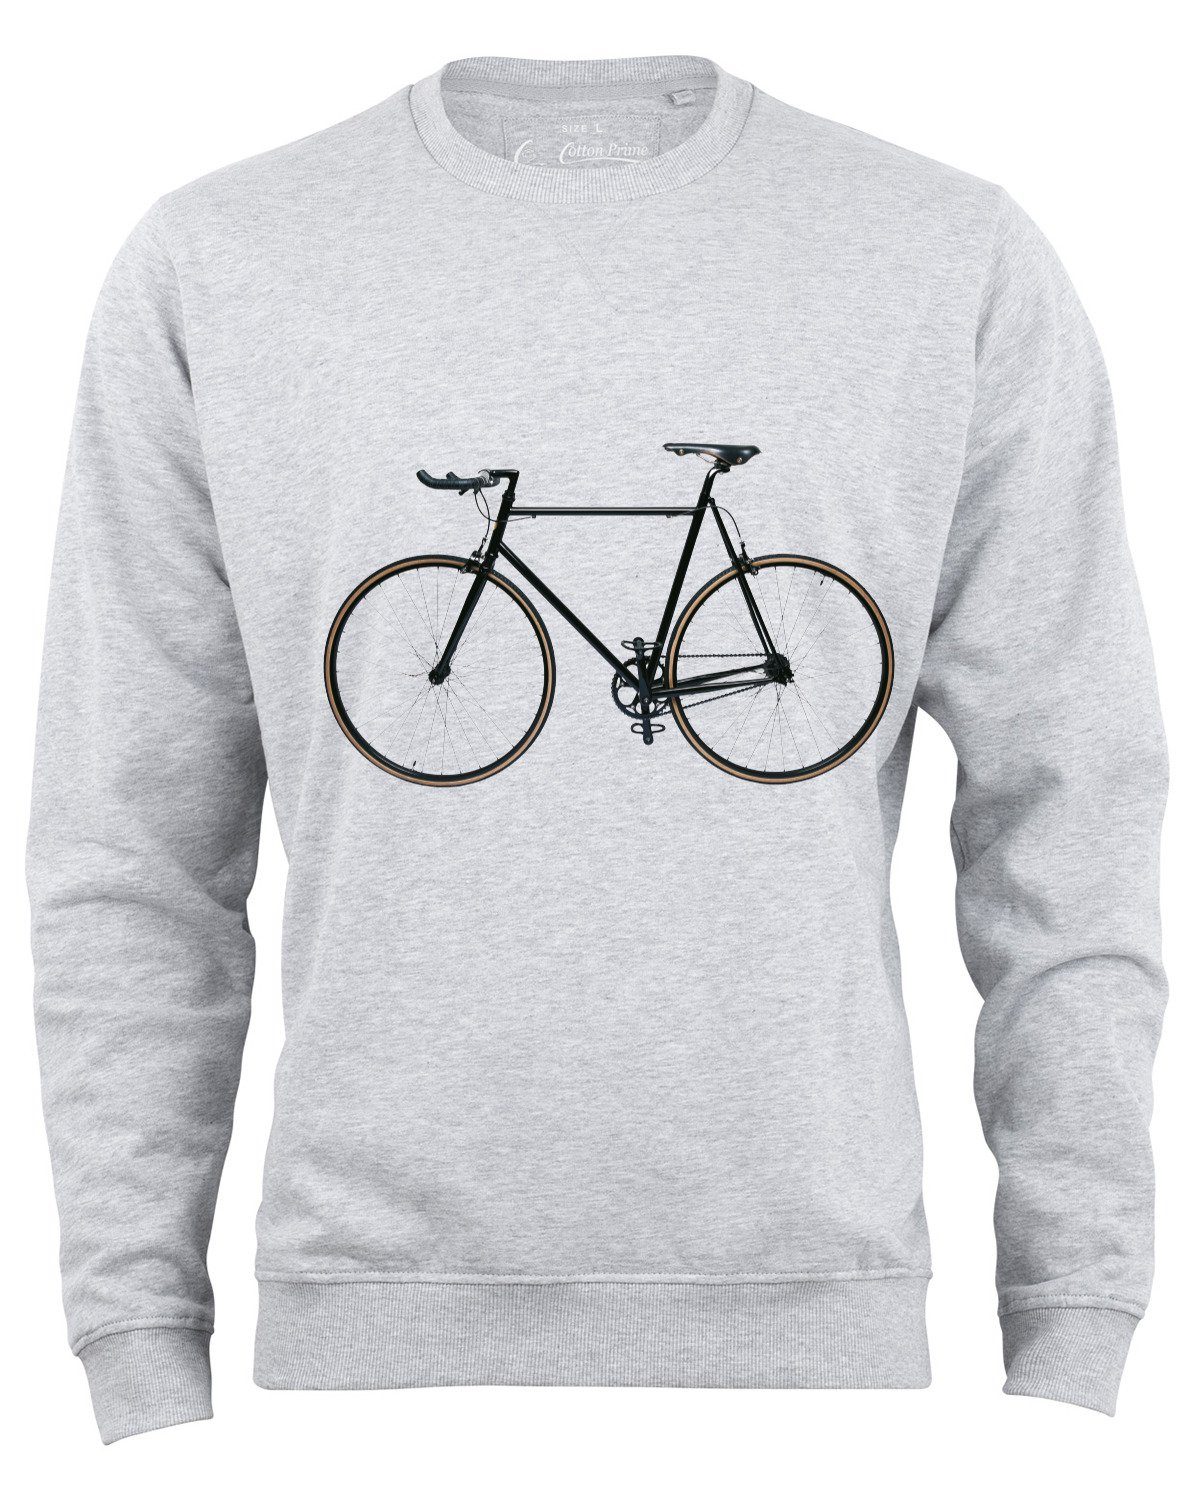 Cotton Prime® Sweatshirt Bike-Fahrrad mit weichem Innenfleece Grau-Melange